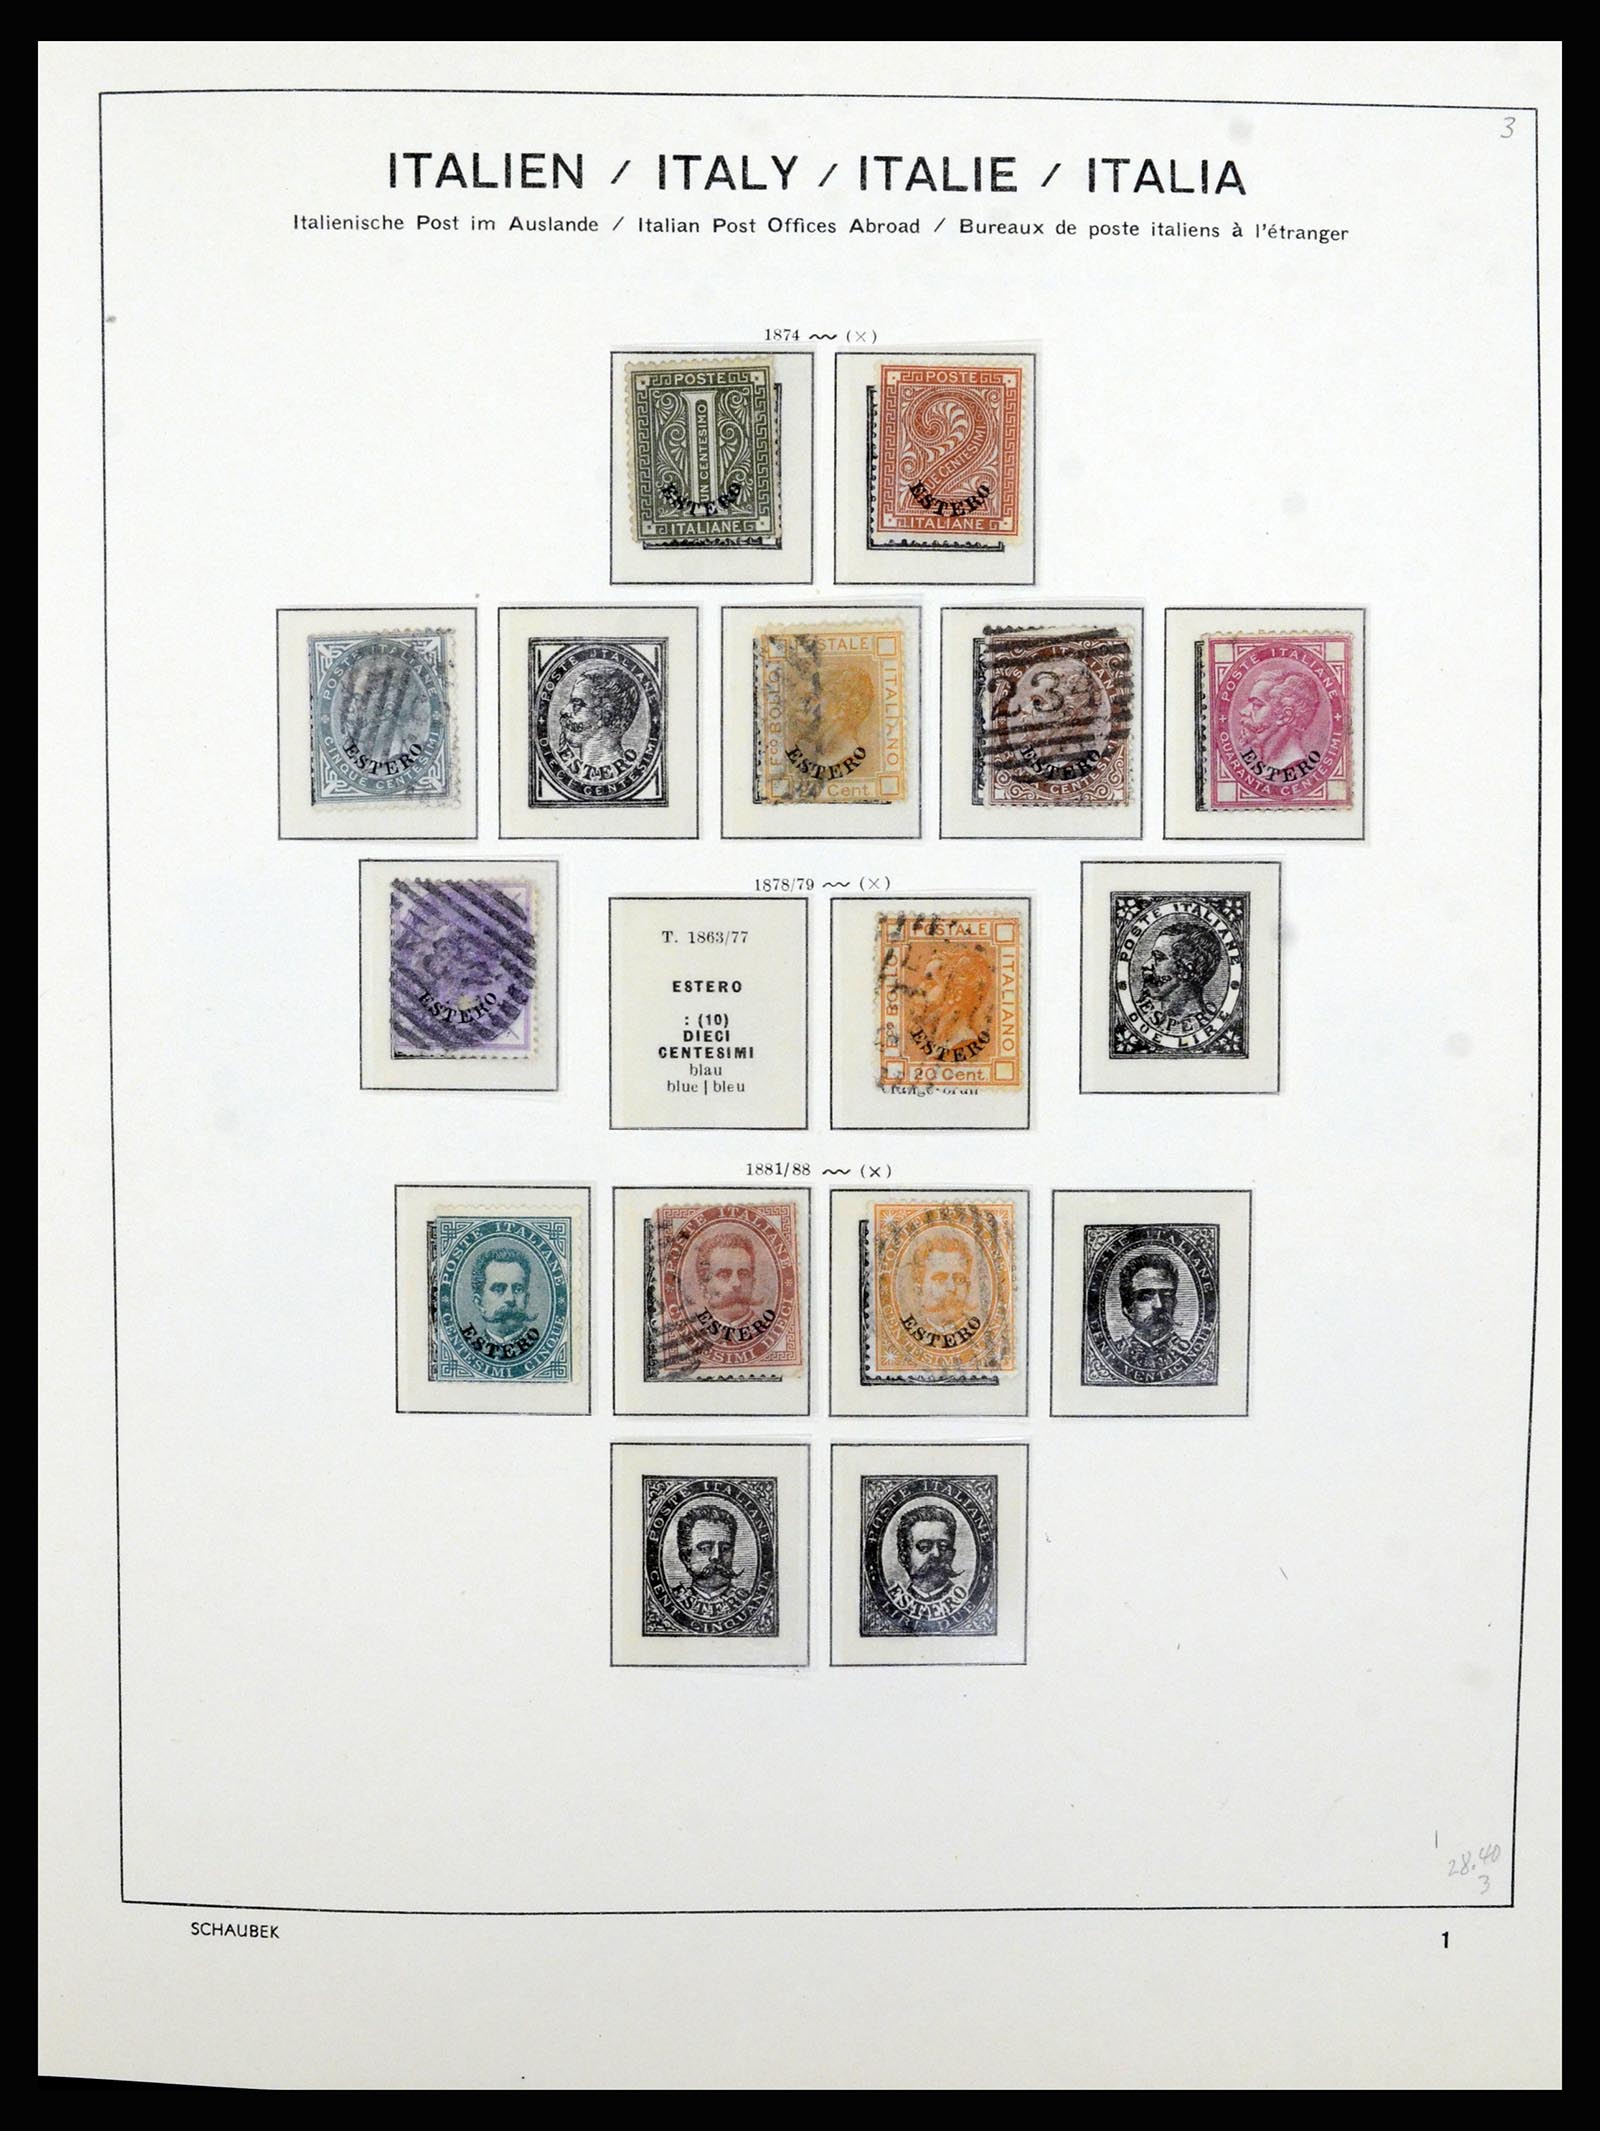 36577 011 - Stamp collection 36577 Italiaanse gebieden 1870-1940.